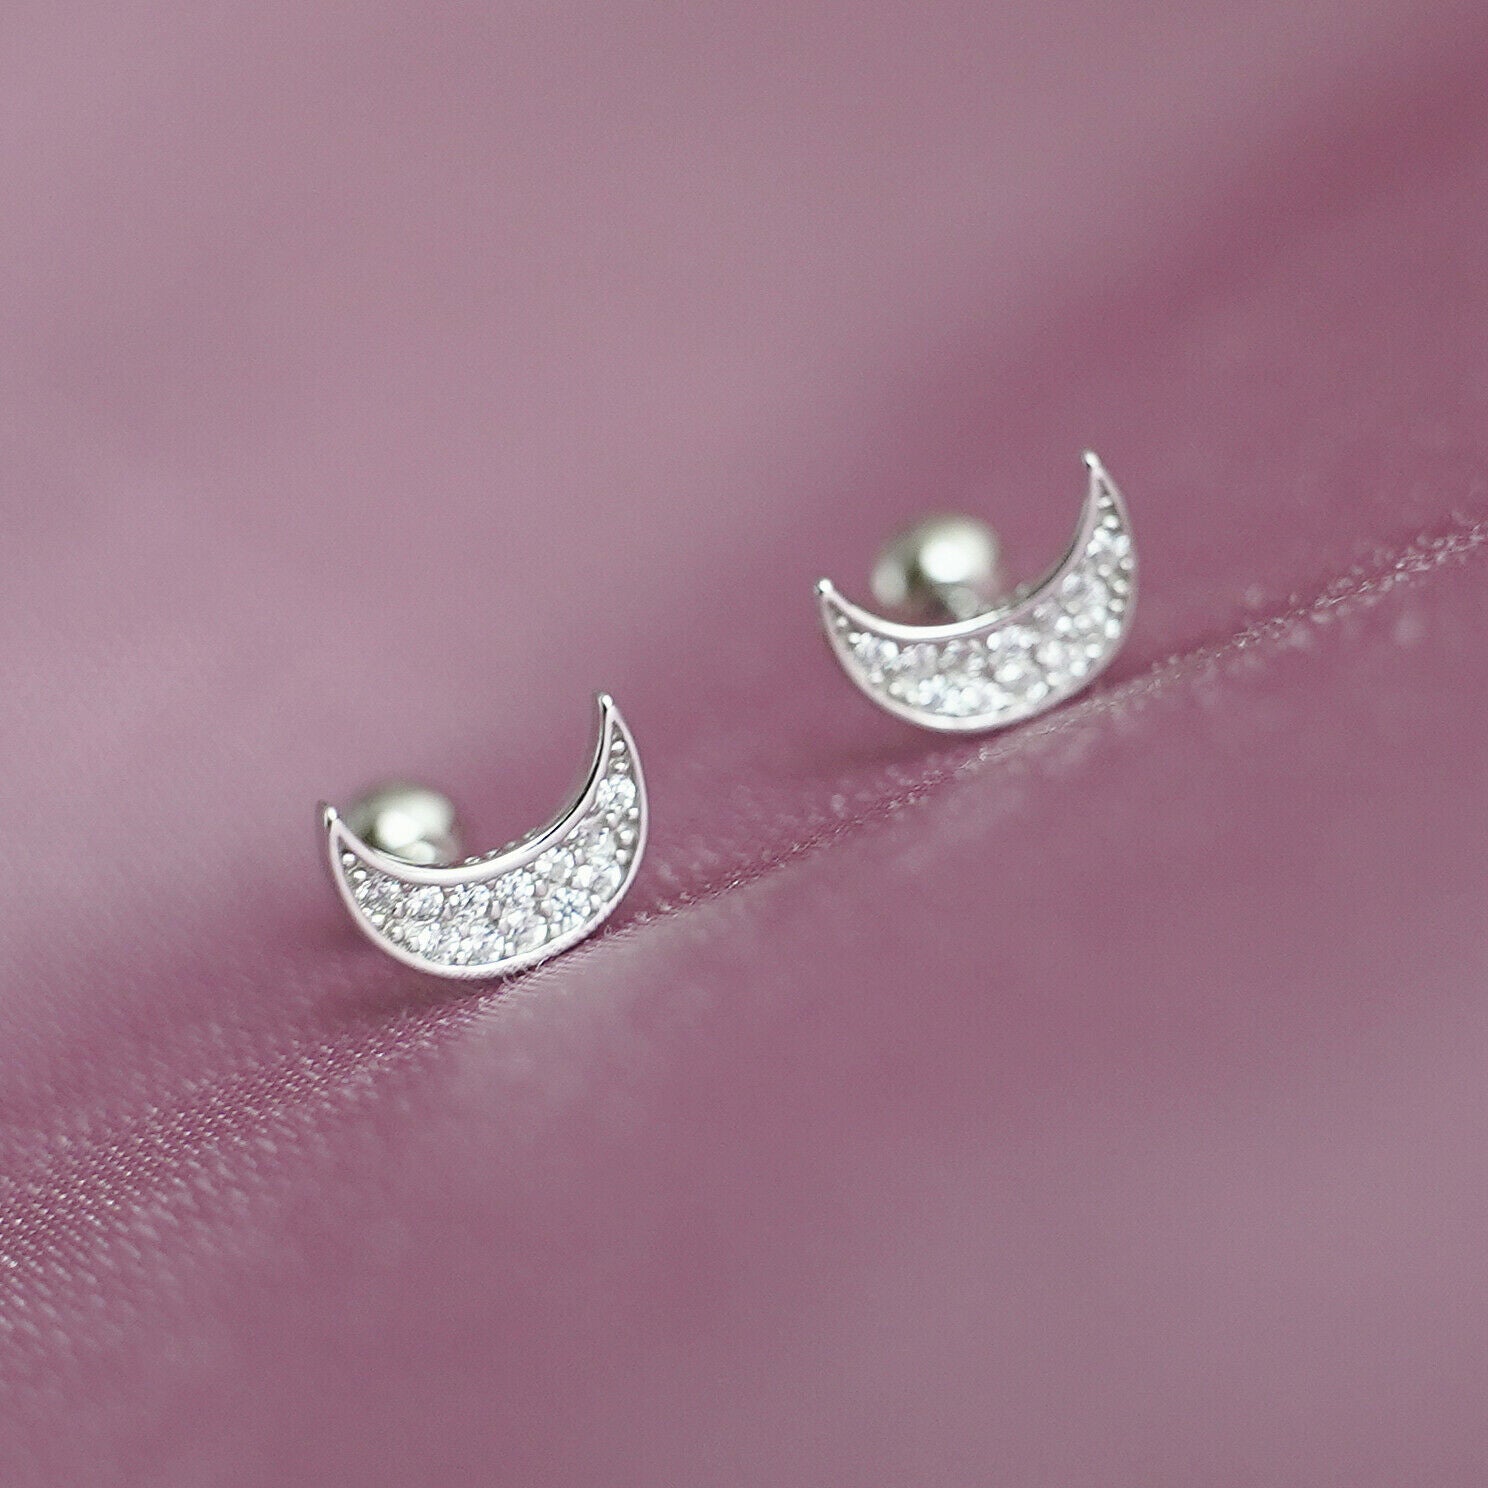 Sterling Silver Eternity Moon Cubic Zirconia Stud Earrings with Screw Back - sugarkittenlondon